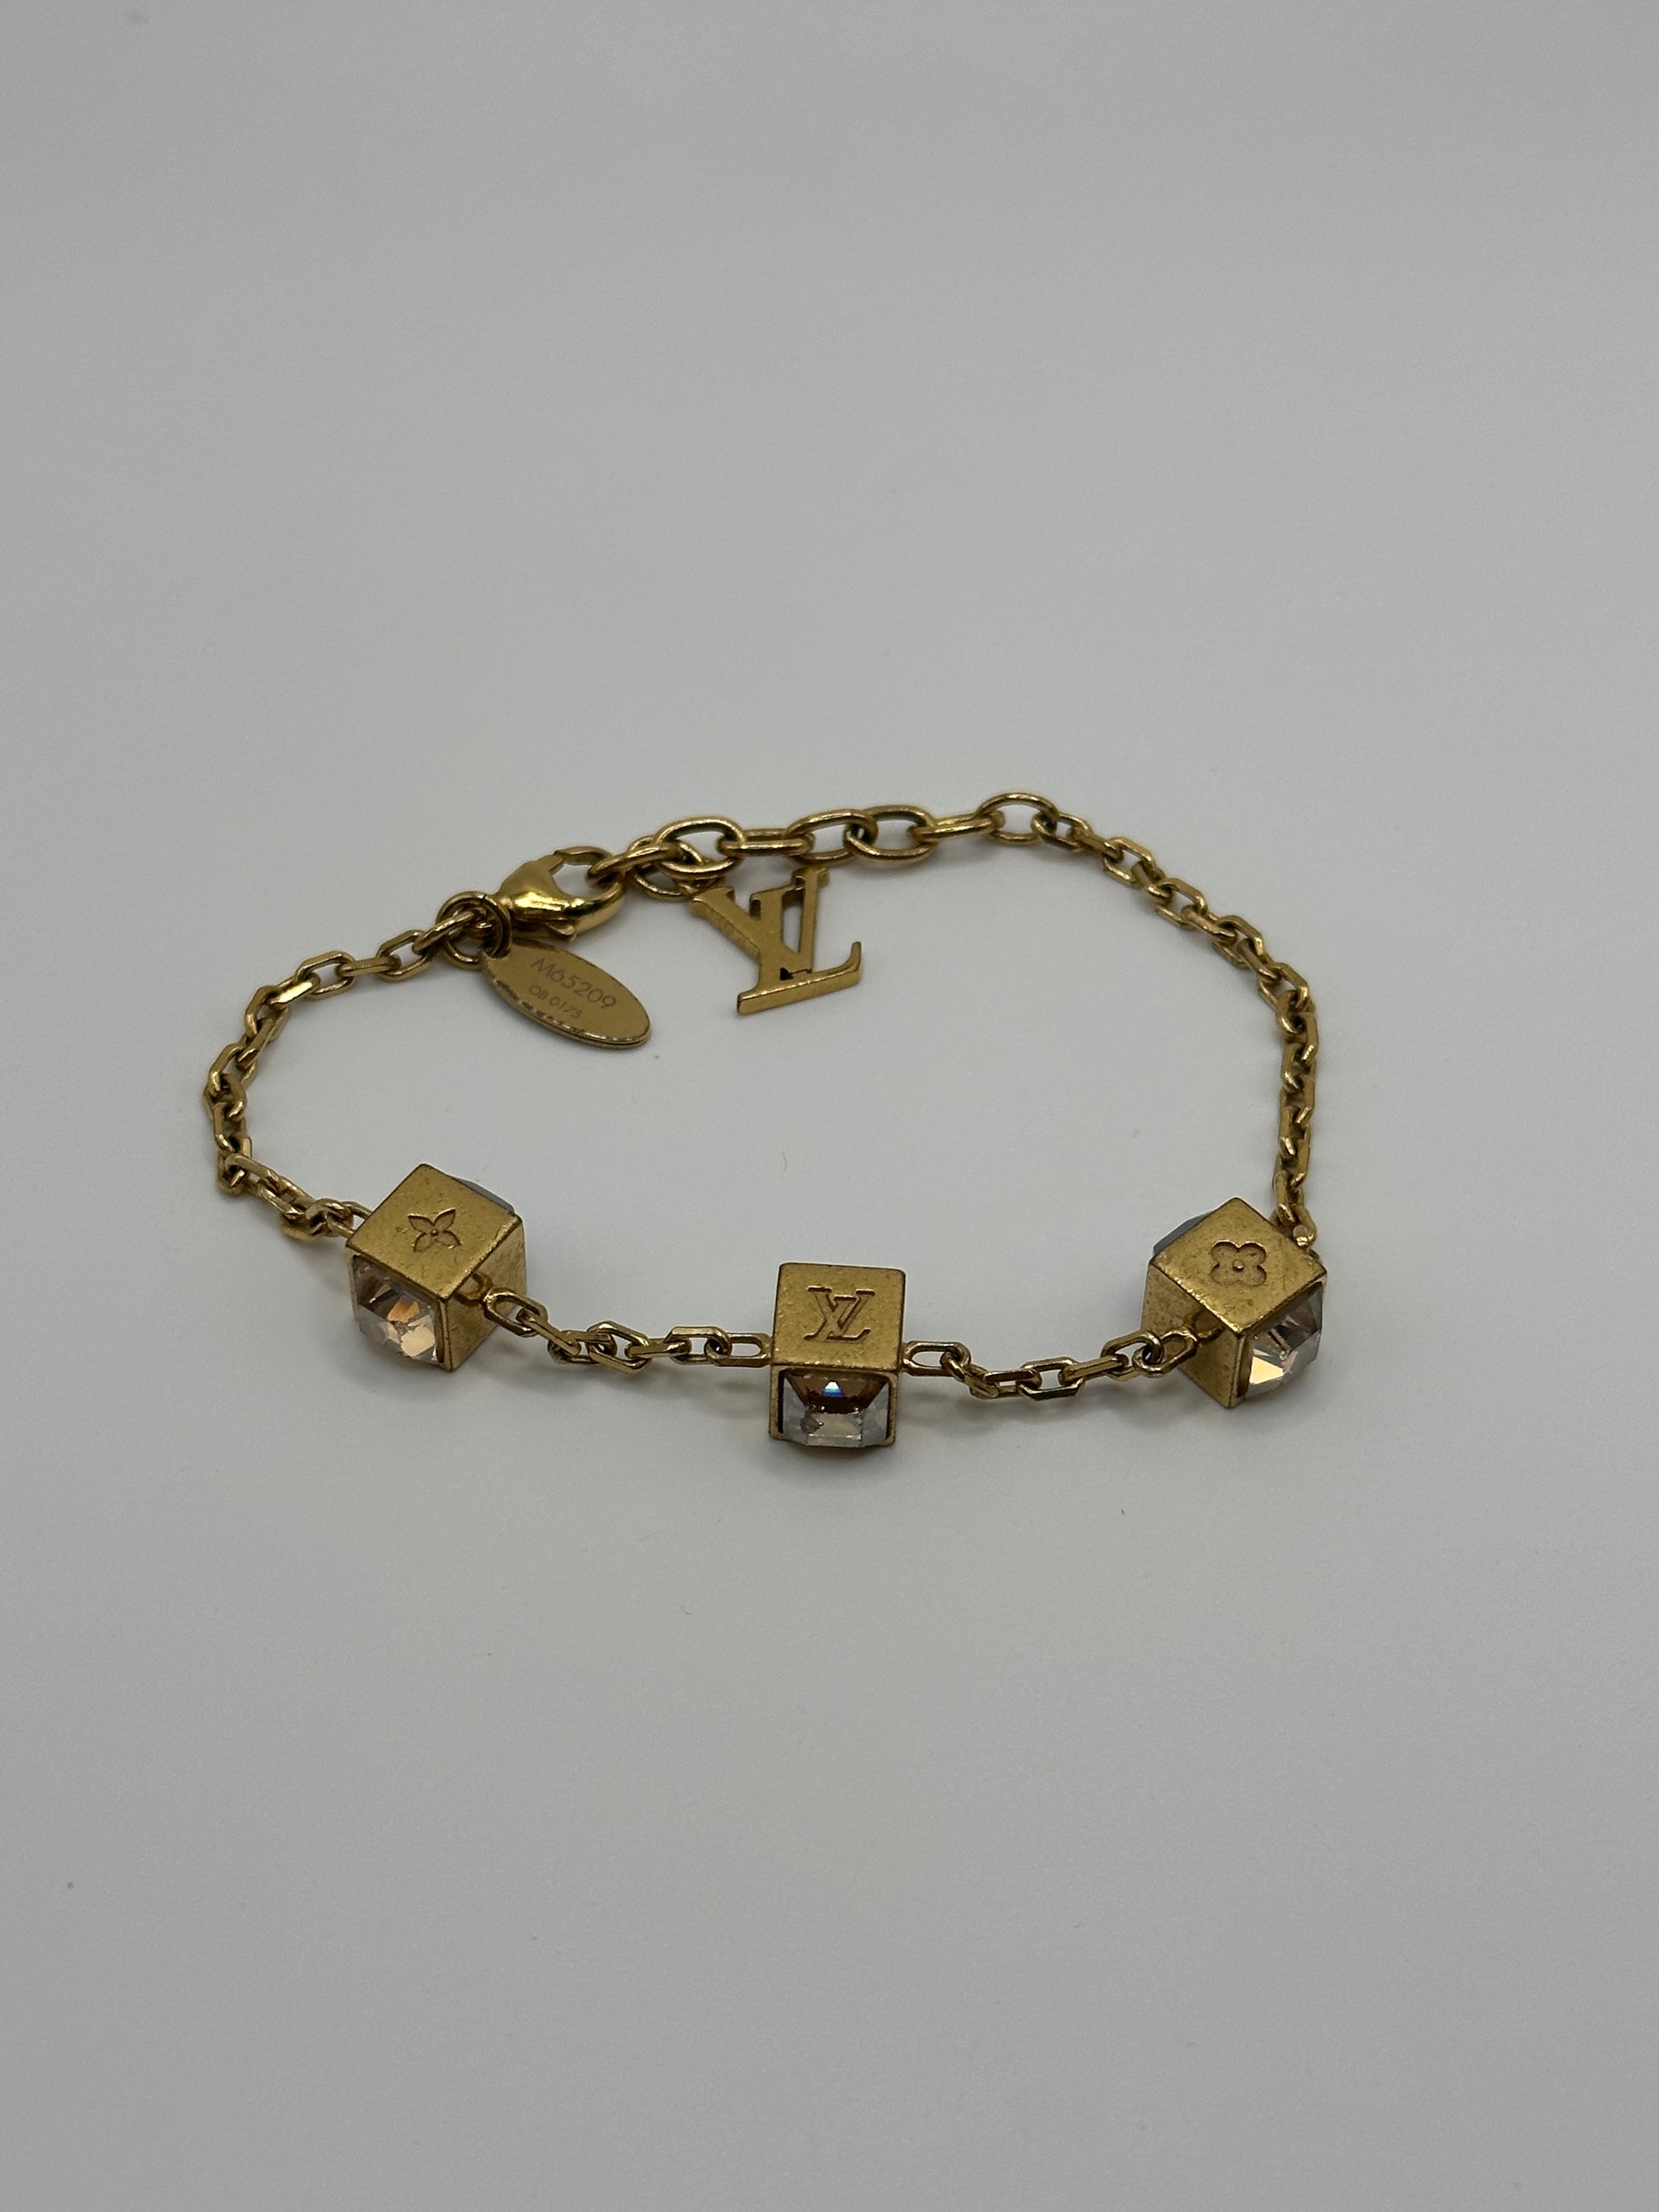 Louis Vuitton Gamble Crystals Gold Tone Bracelet